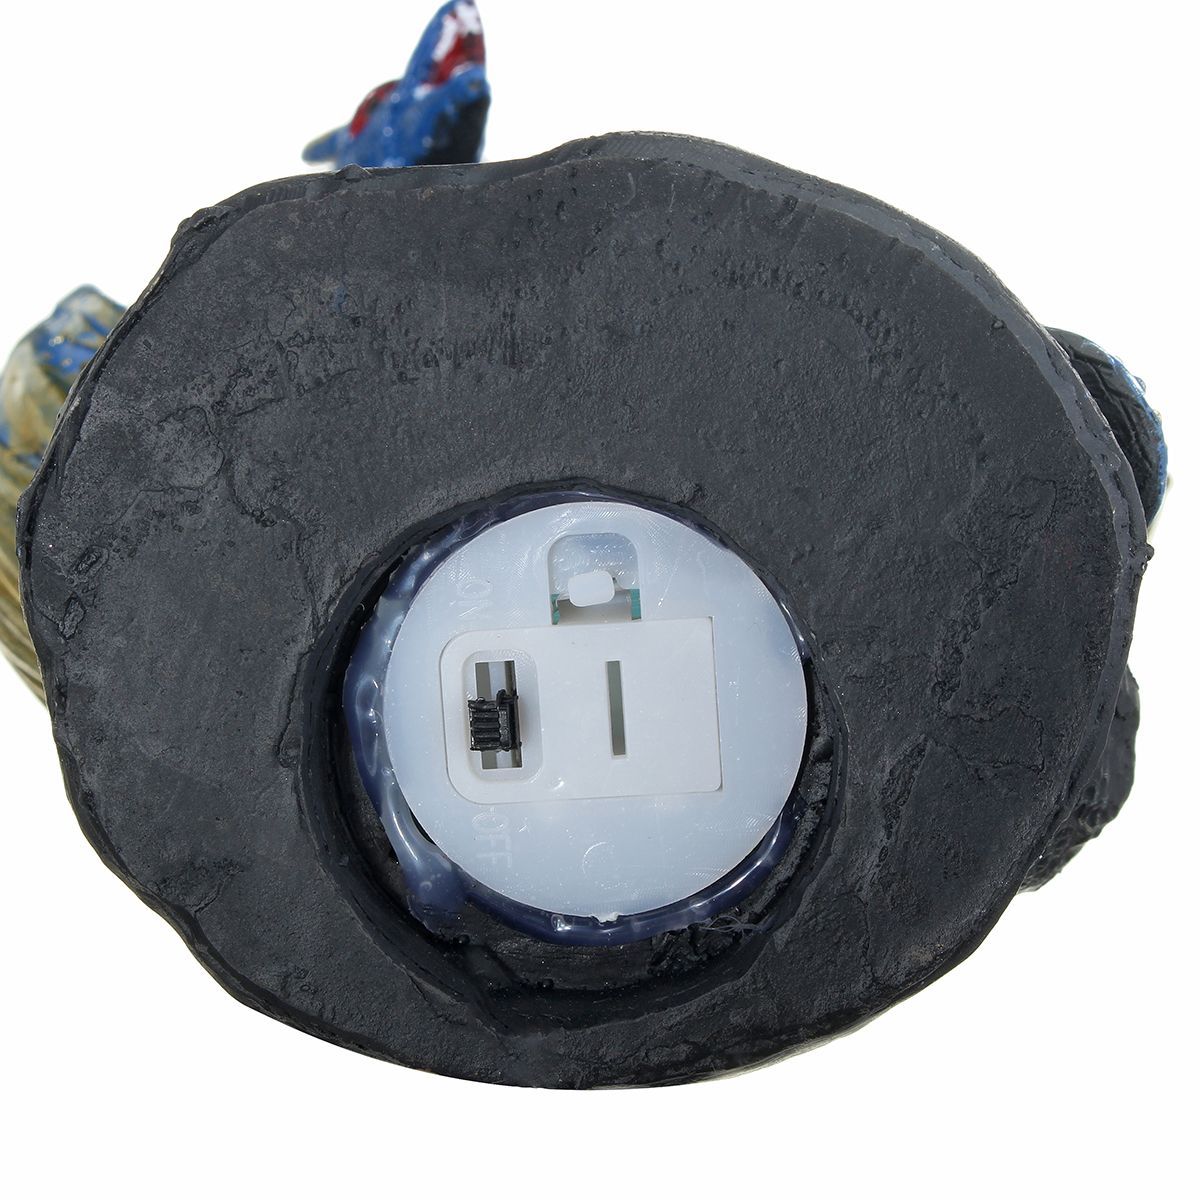 LED-Dragon-Ceramic-Incense-Burner-Holder-Black-Smoking-Backflow-Home-Decor-1696180